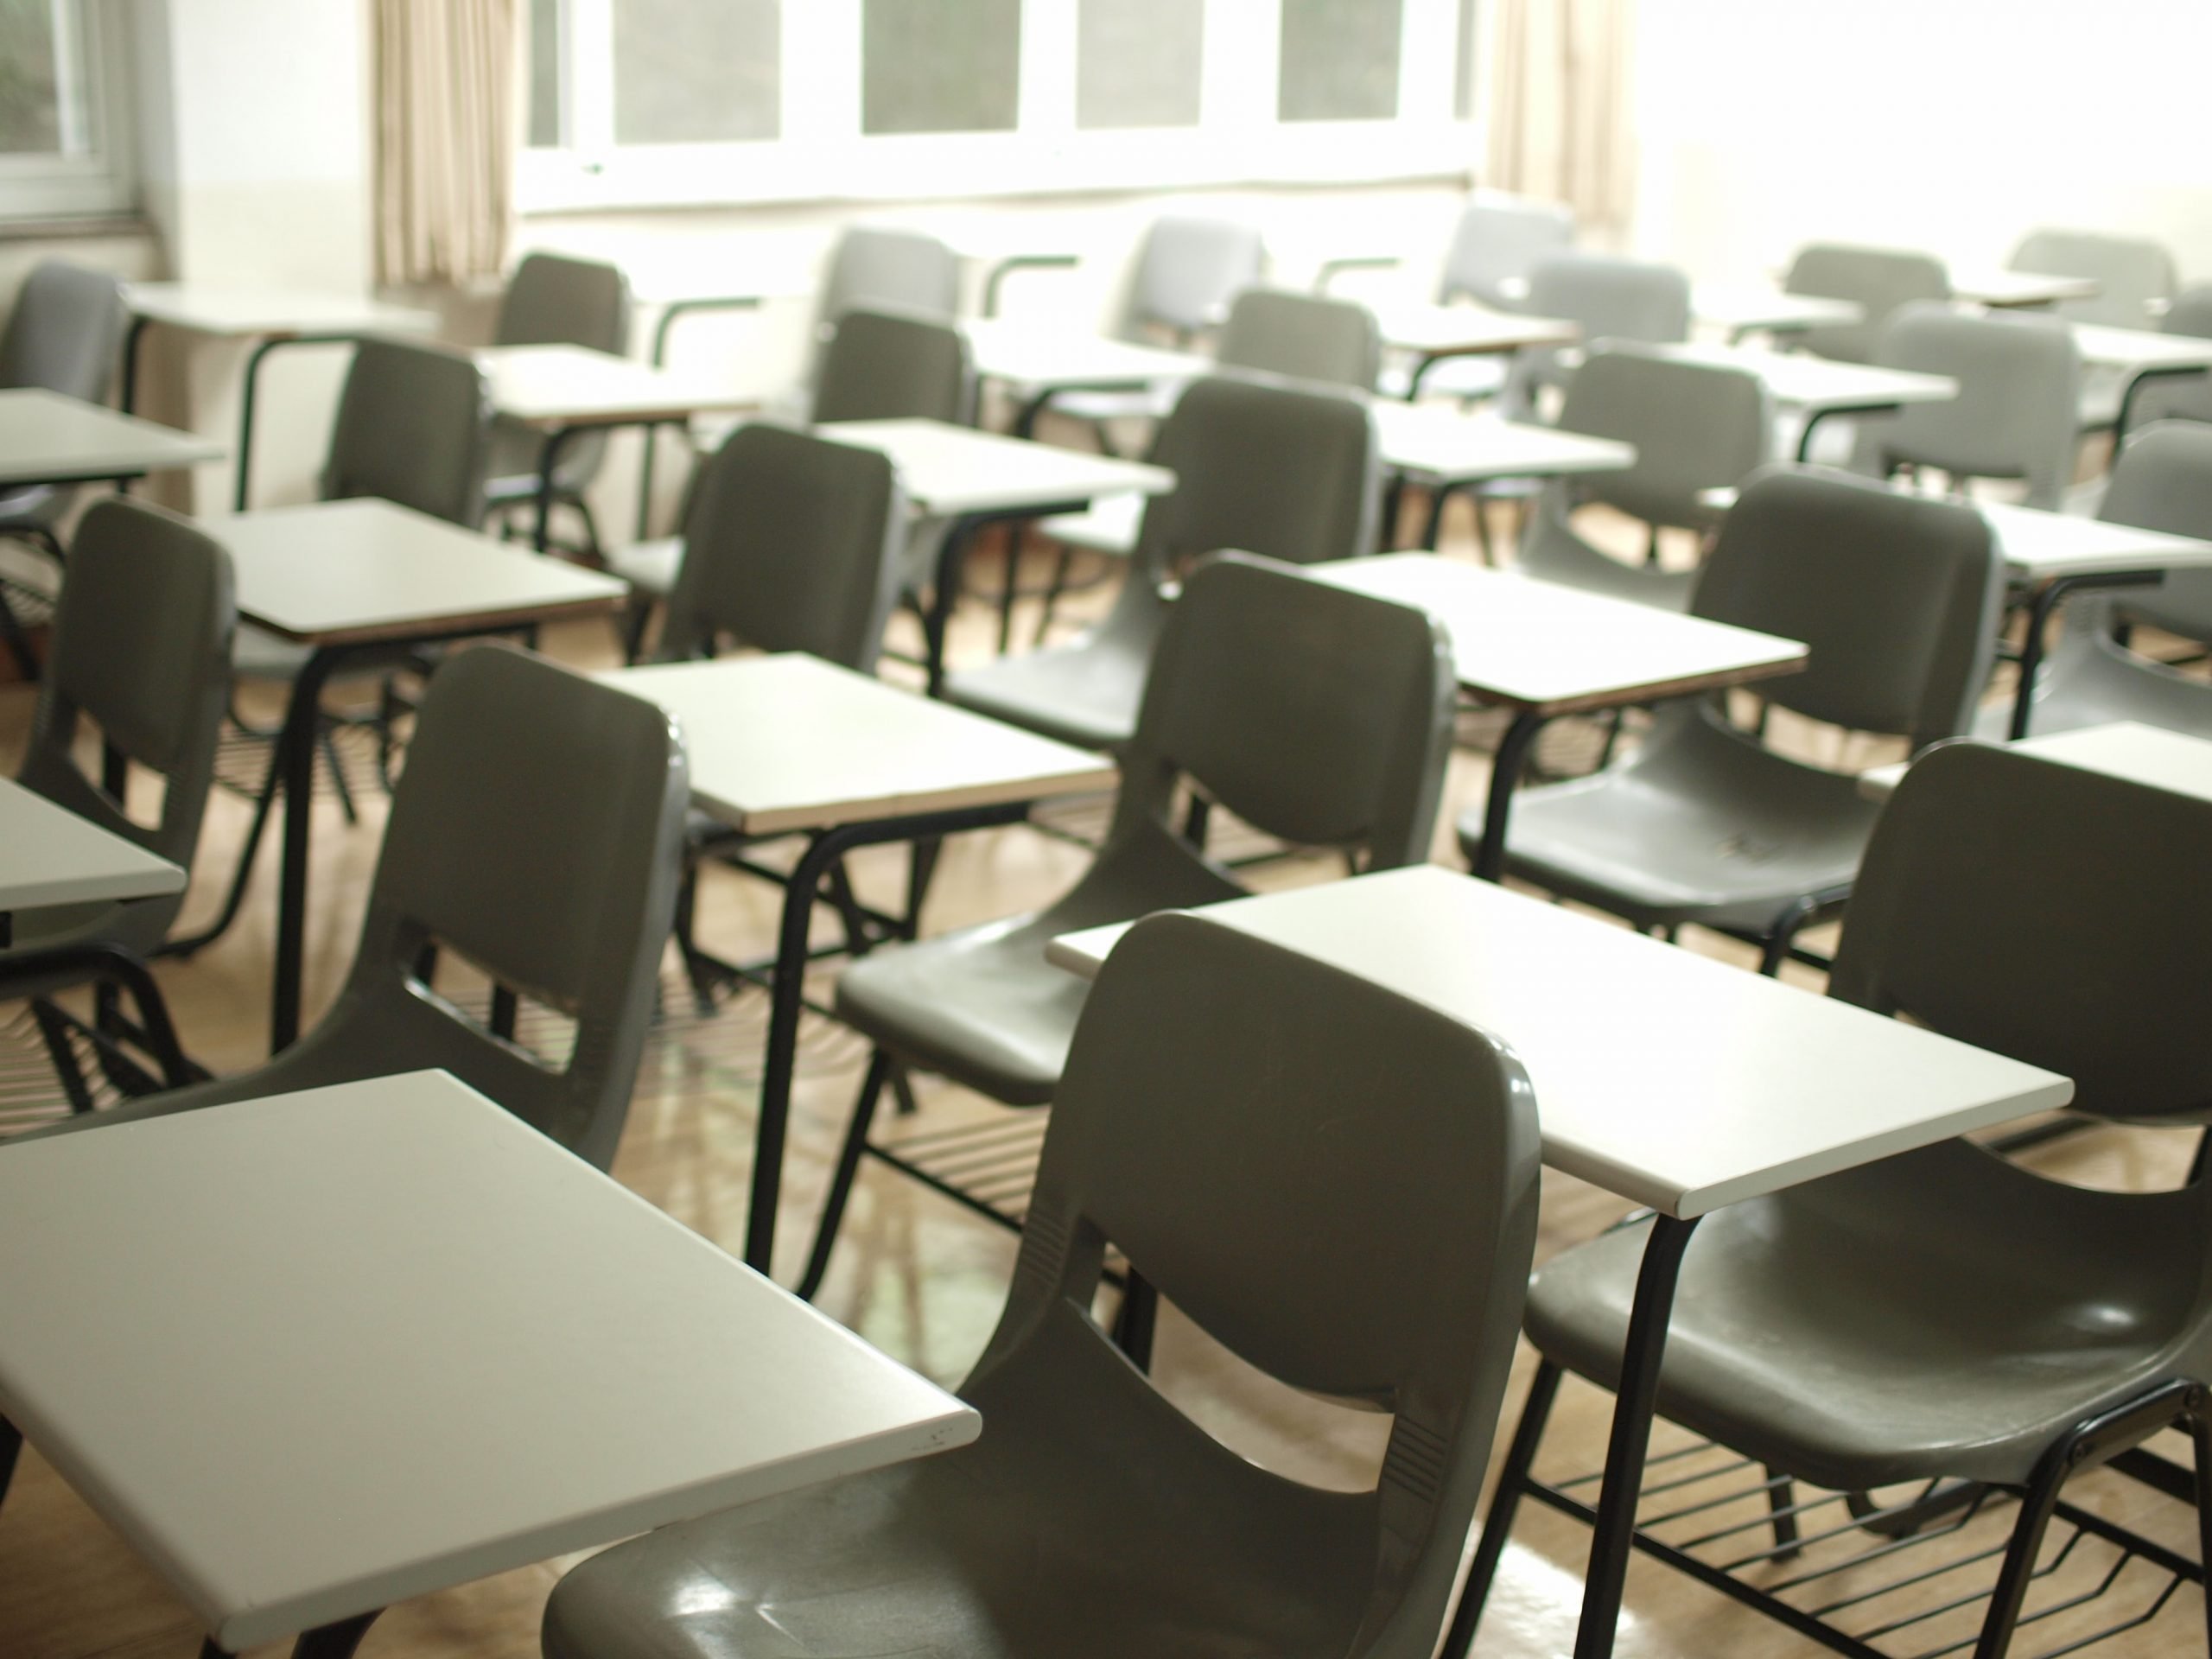 Rientro a scuola in sicurezza, Pd: “Regione e Prefettura agiscano”